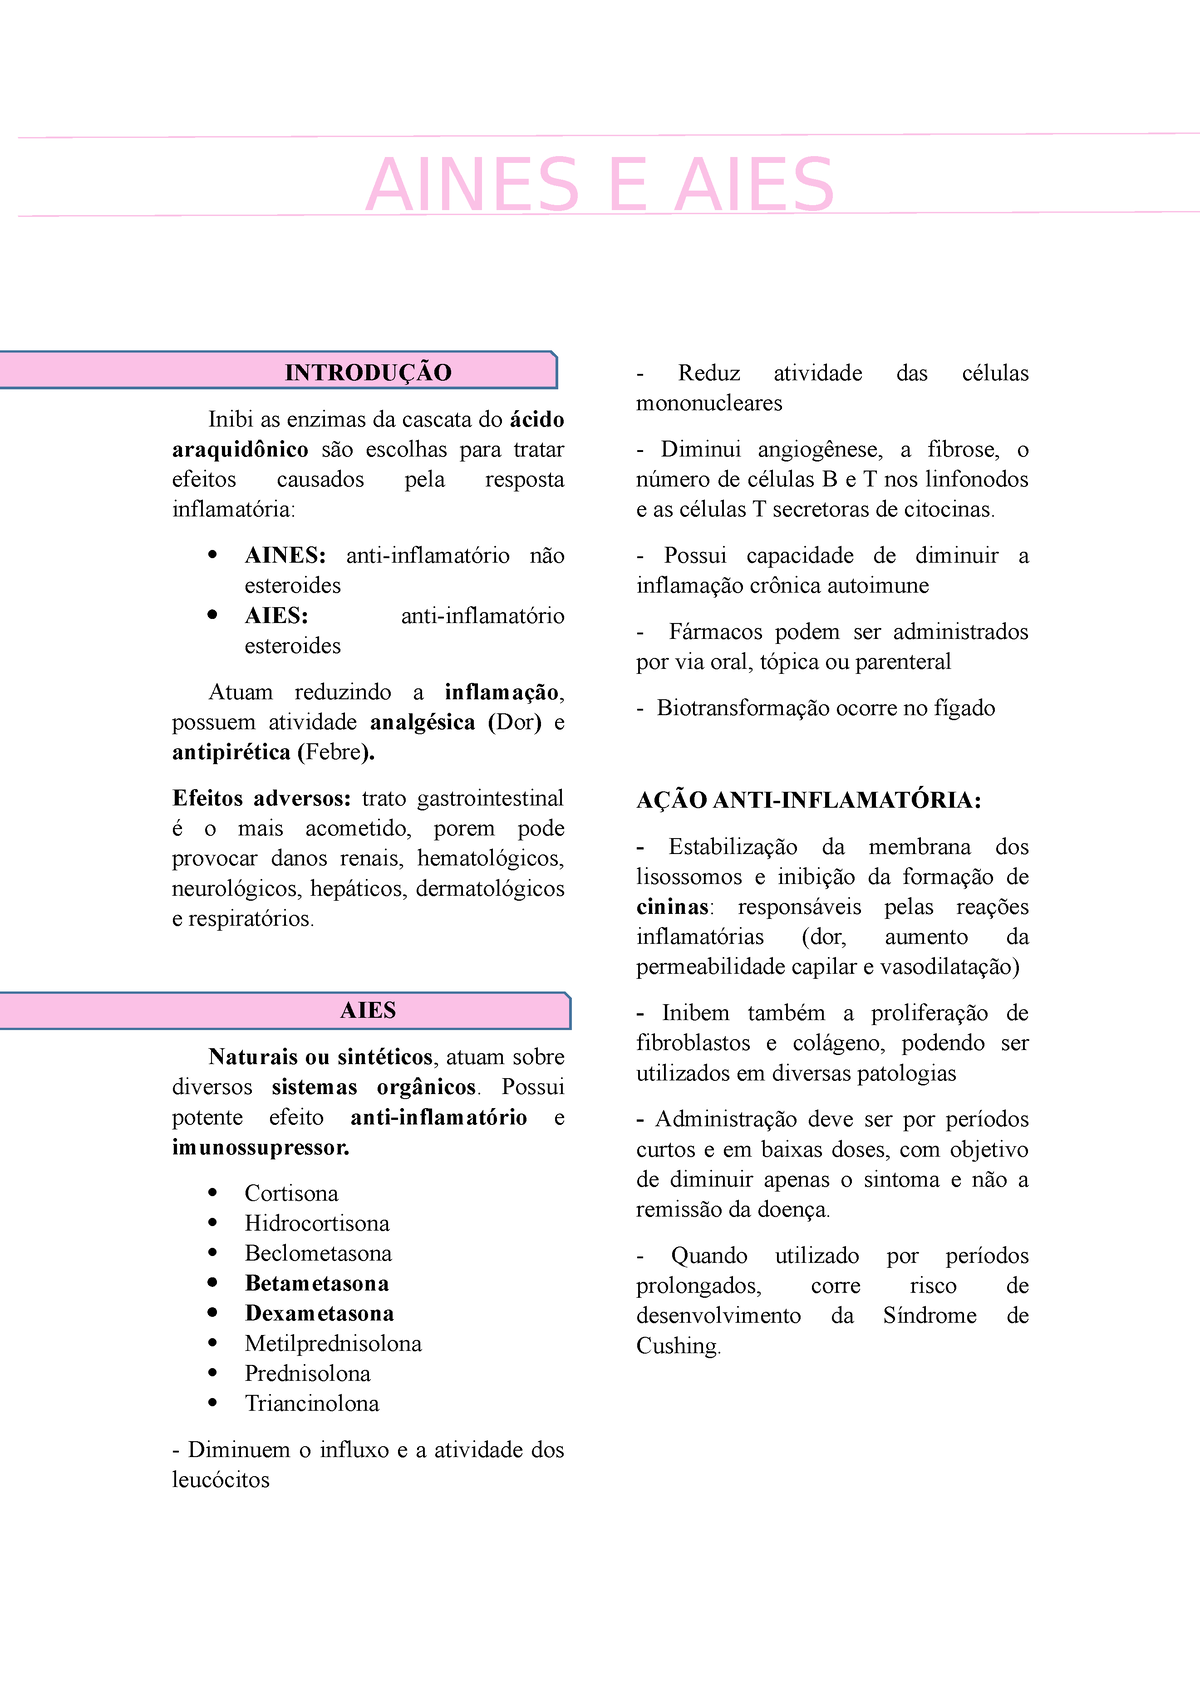 AIES-AINES aula PDF.pdf